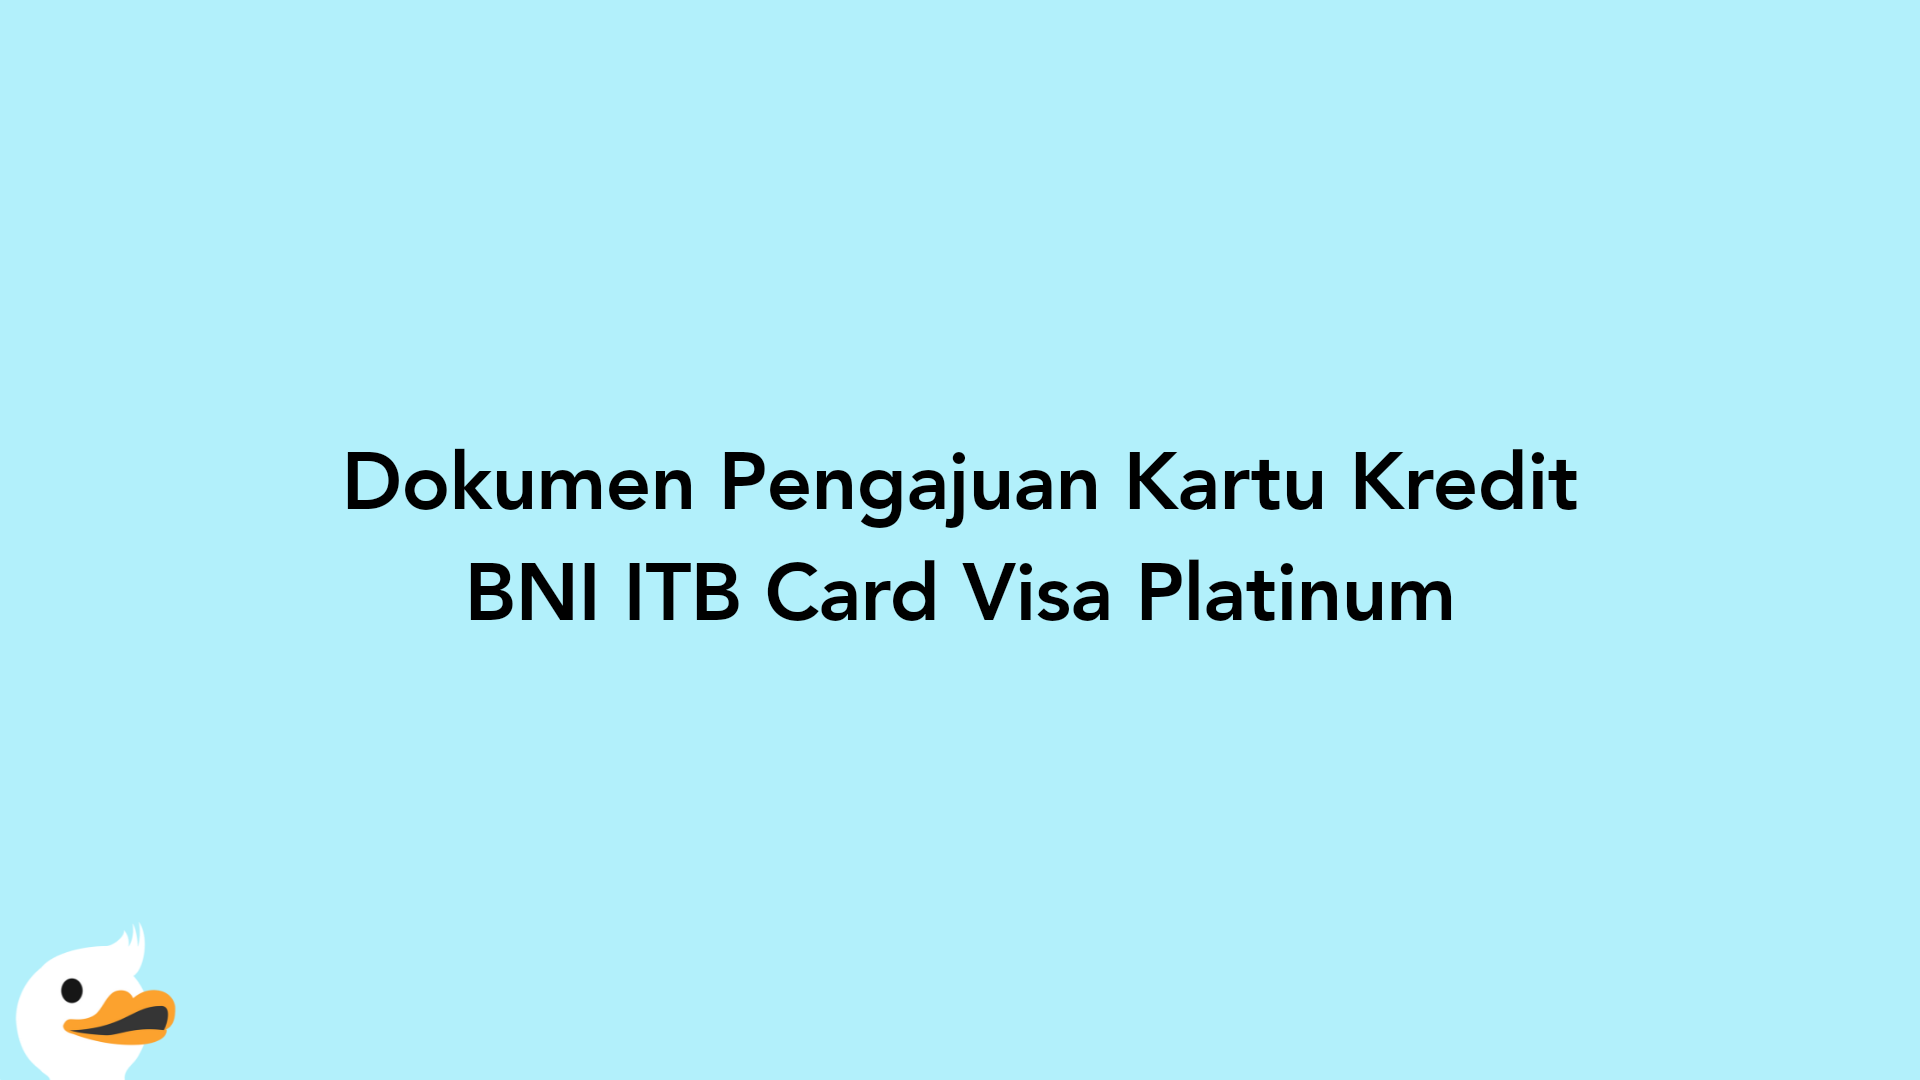 Dokumen Pengajuan Kartu Kredit BNI ITB Card Visa Platinum